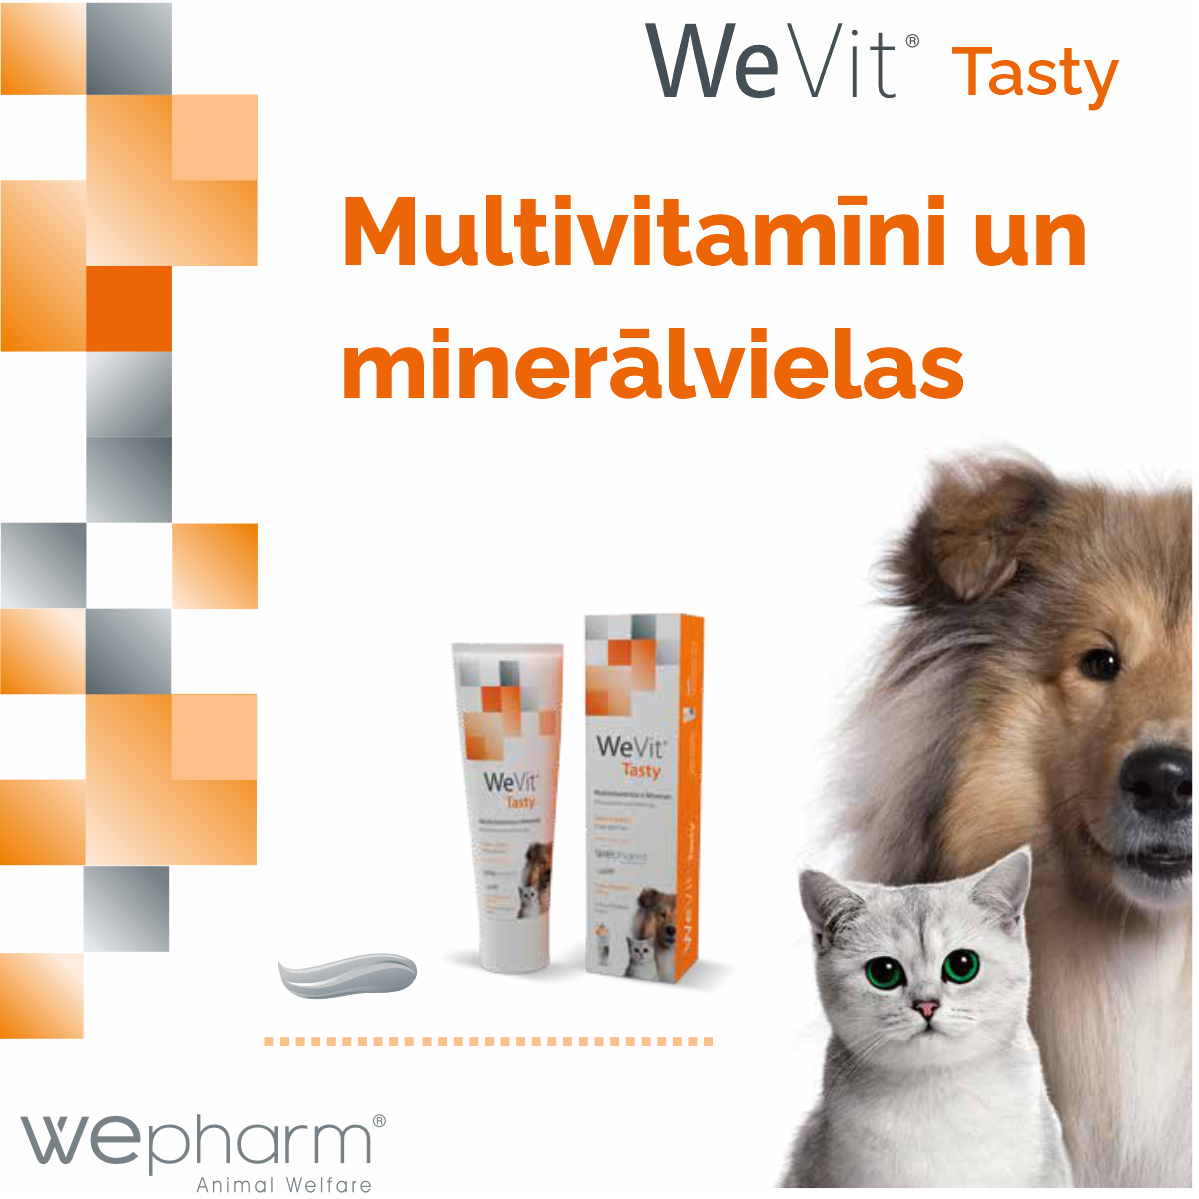 WeVit tasty - imunitātei un veselības stiprināšanai.